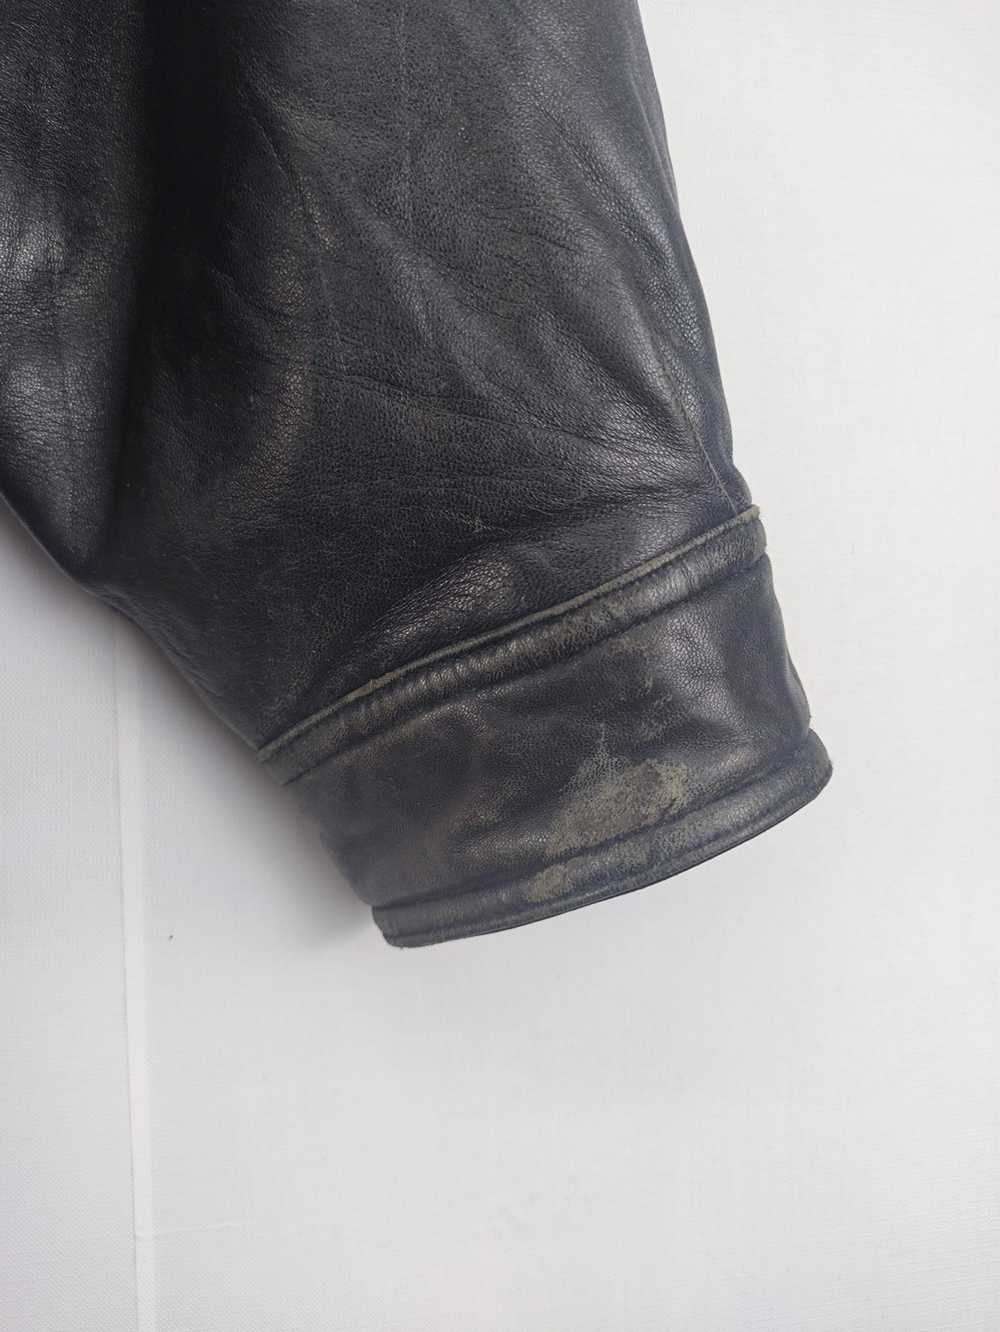 Leather Jacket × Ysl Pour Homme × Yves Saint Laur… - image 4